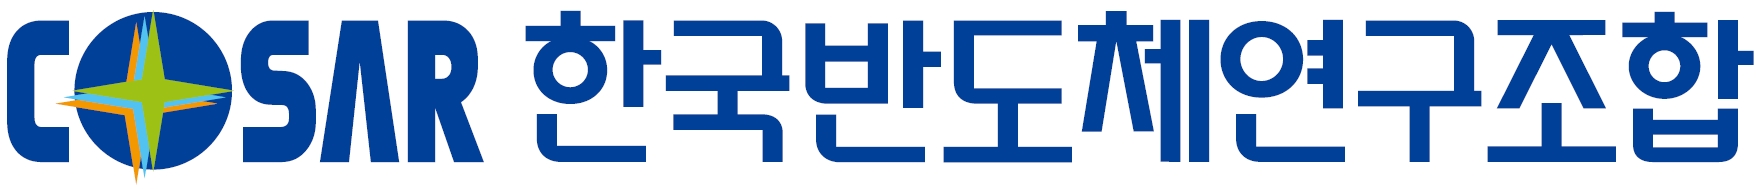 (사)한국반도체연구조합의 기업로고